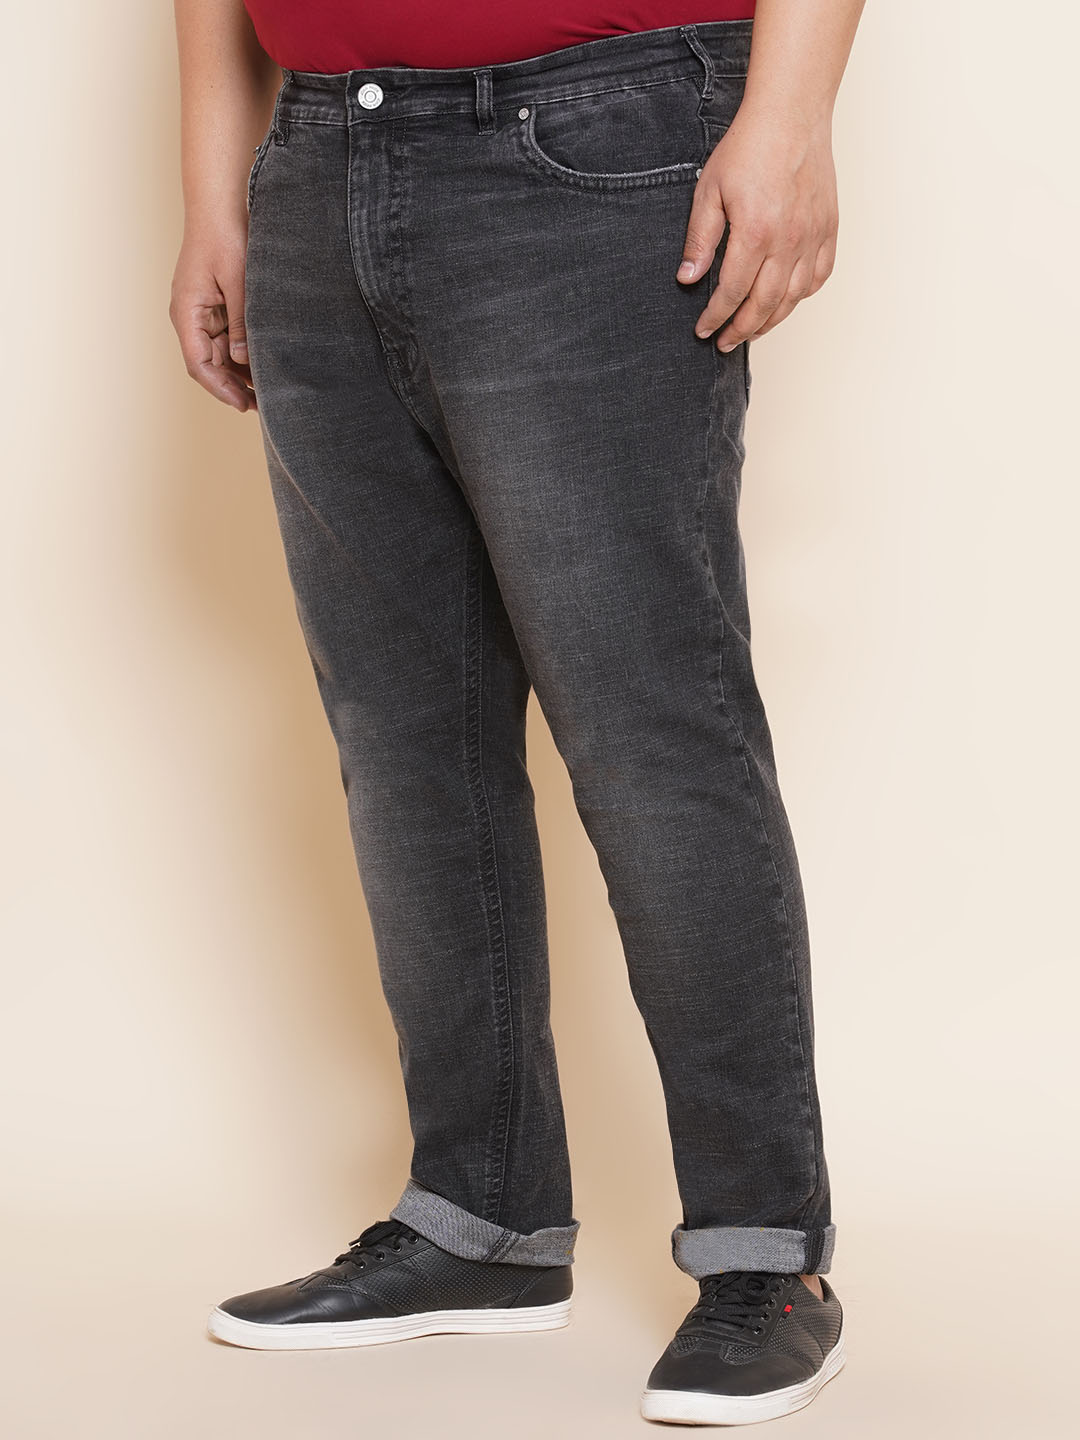 bottomwear/jeans/JPJ12295/jpj12295-4.jpg